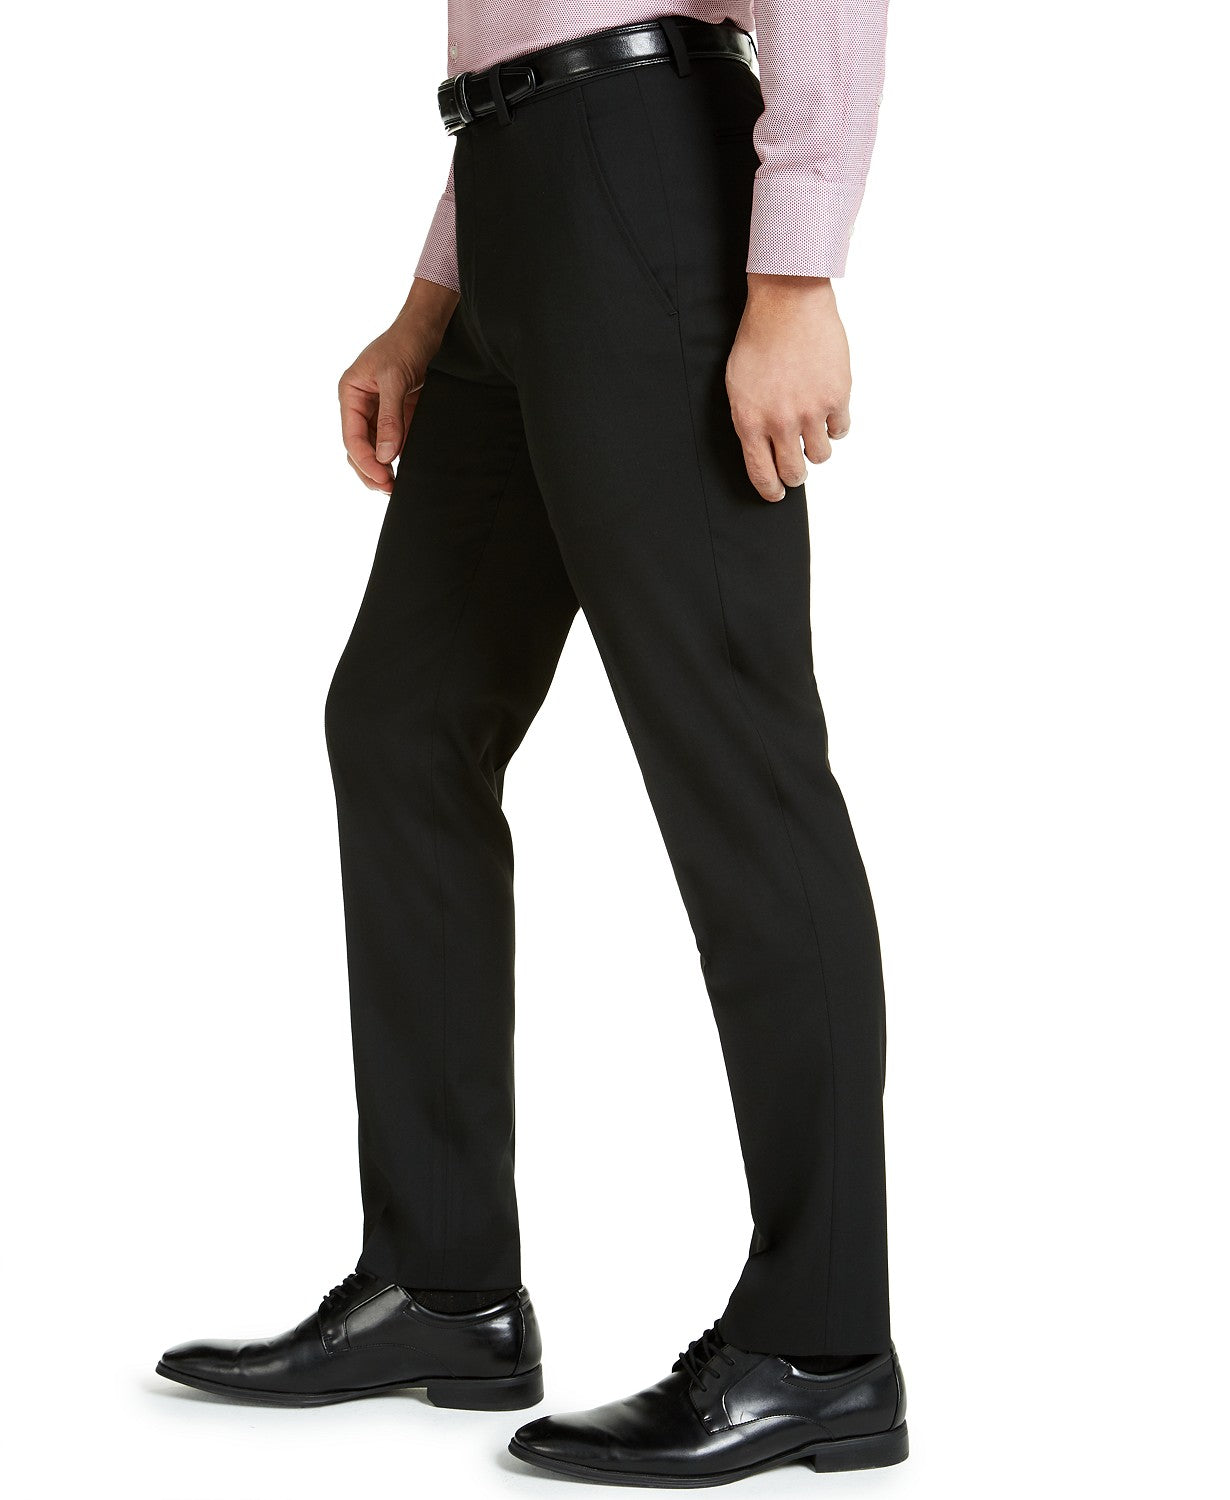 Alfani Men's 2 Piece Suit Black 36R 30 x 32 Slim Fit Stretch Solid Flat Front